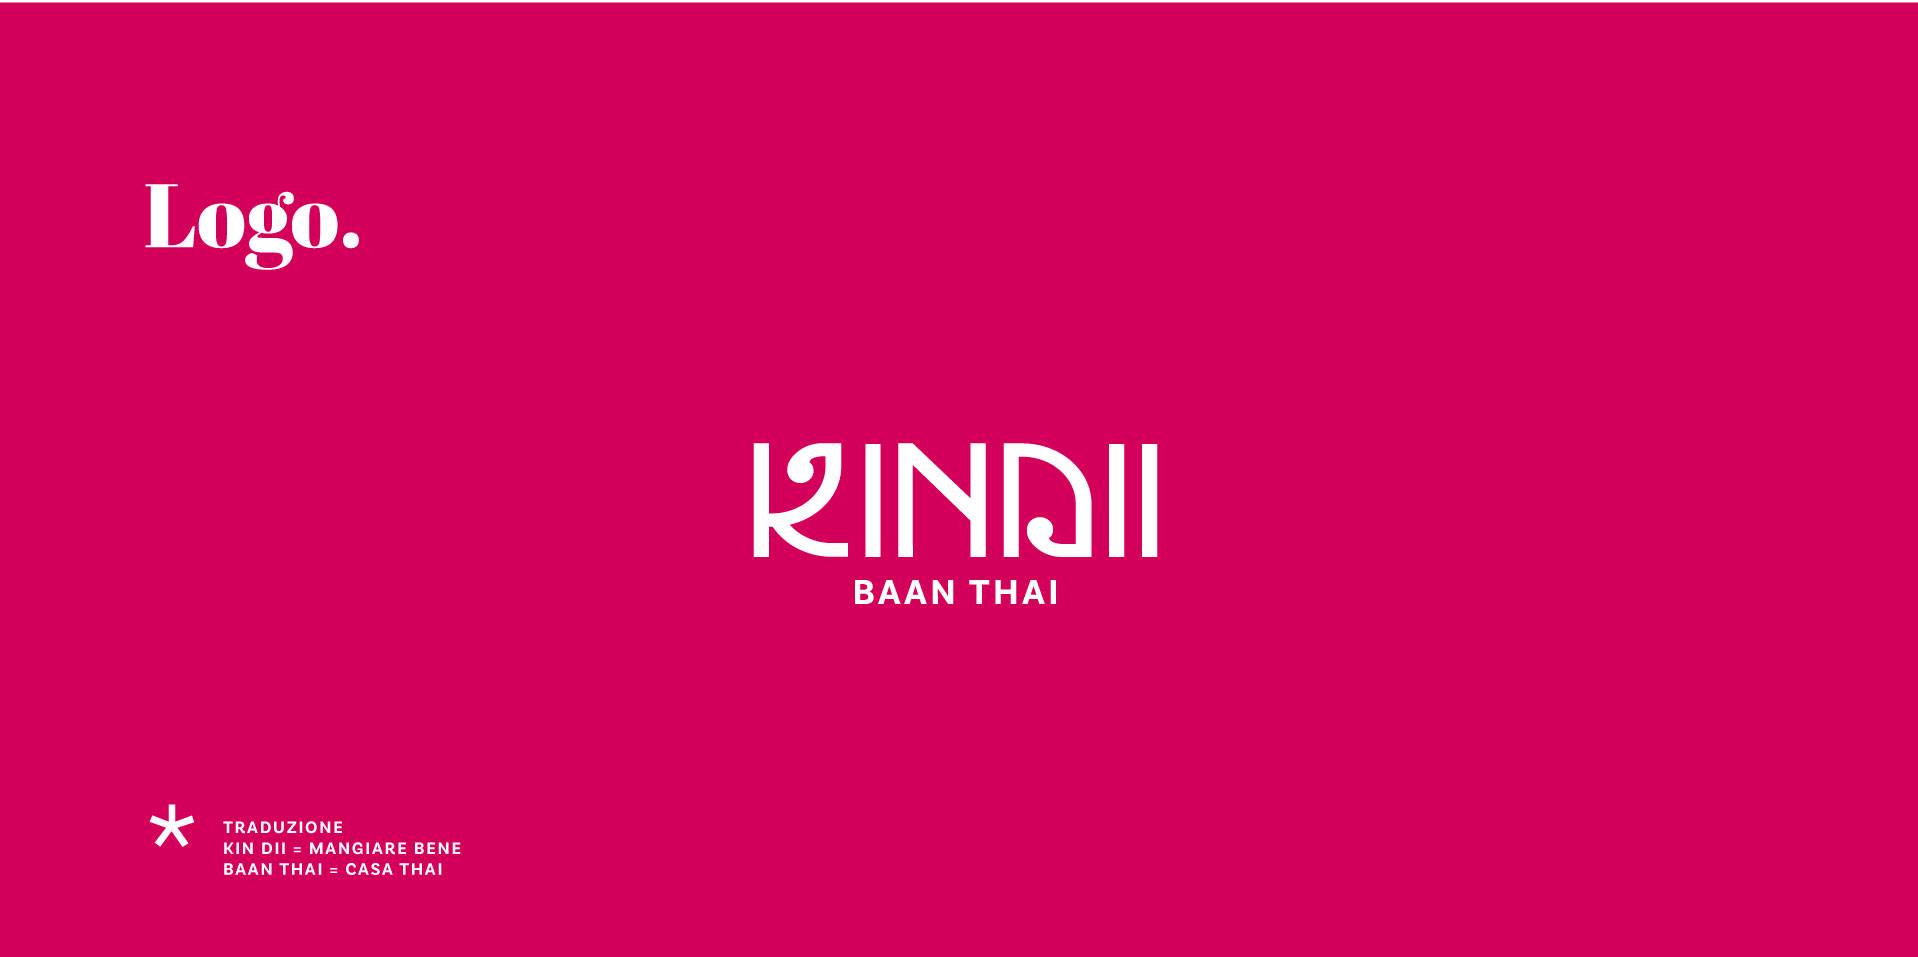 01-KinDii-baan-thai-logo